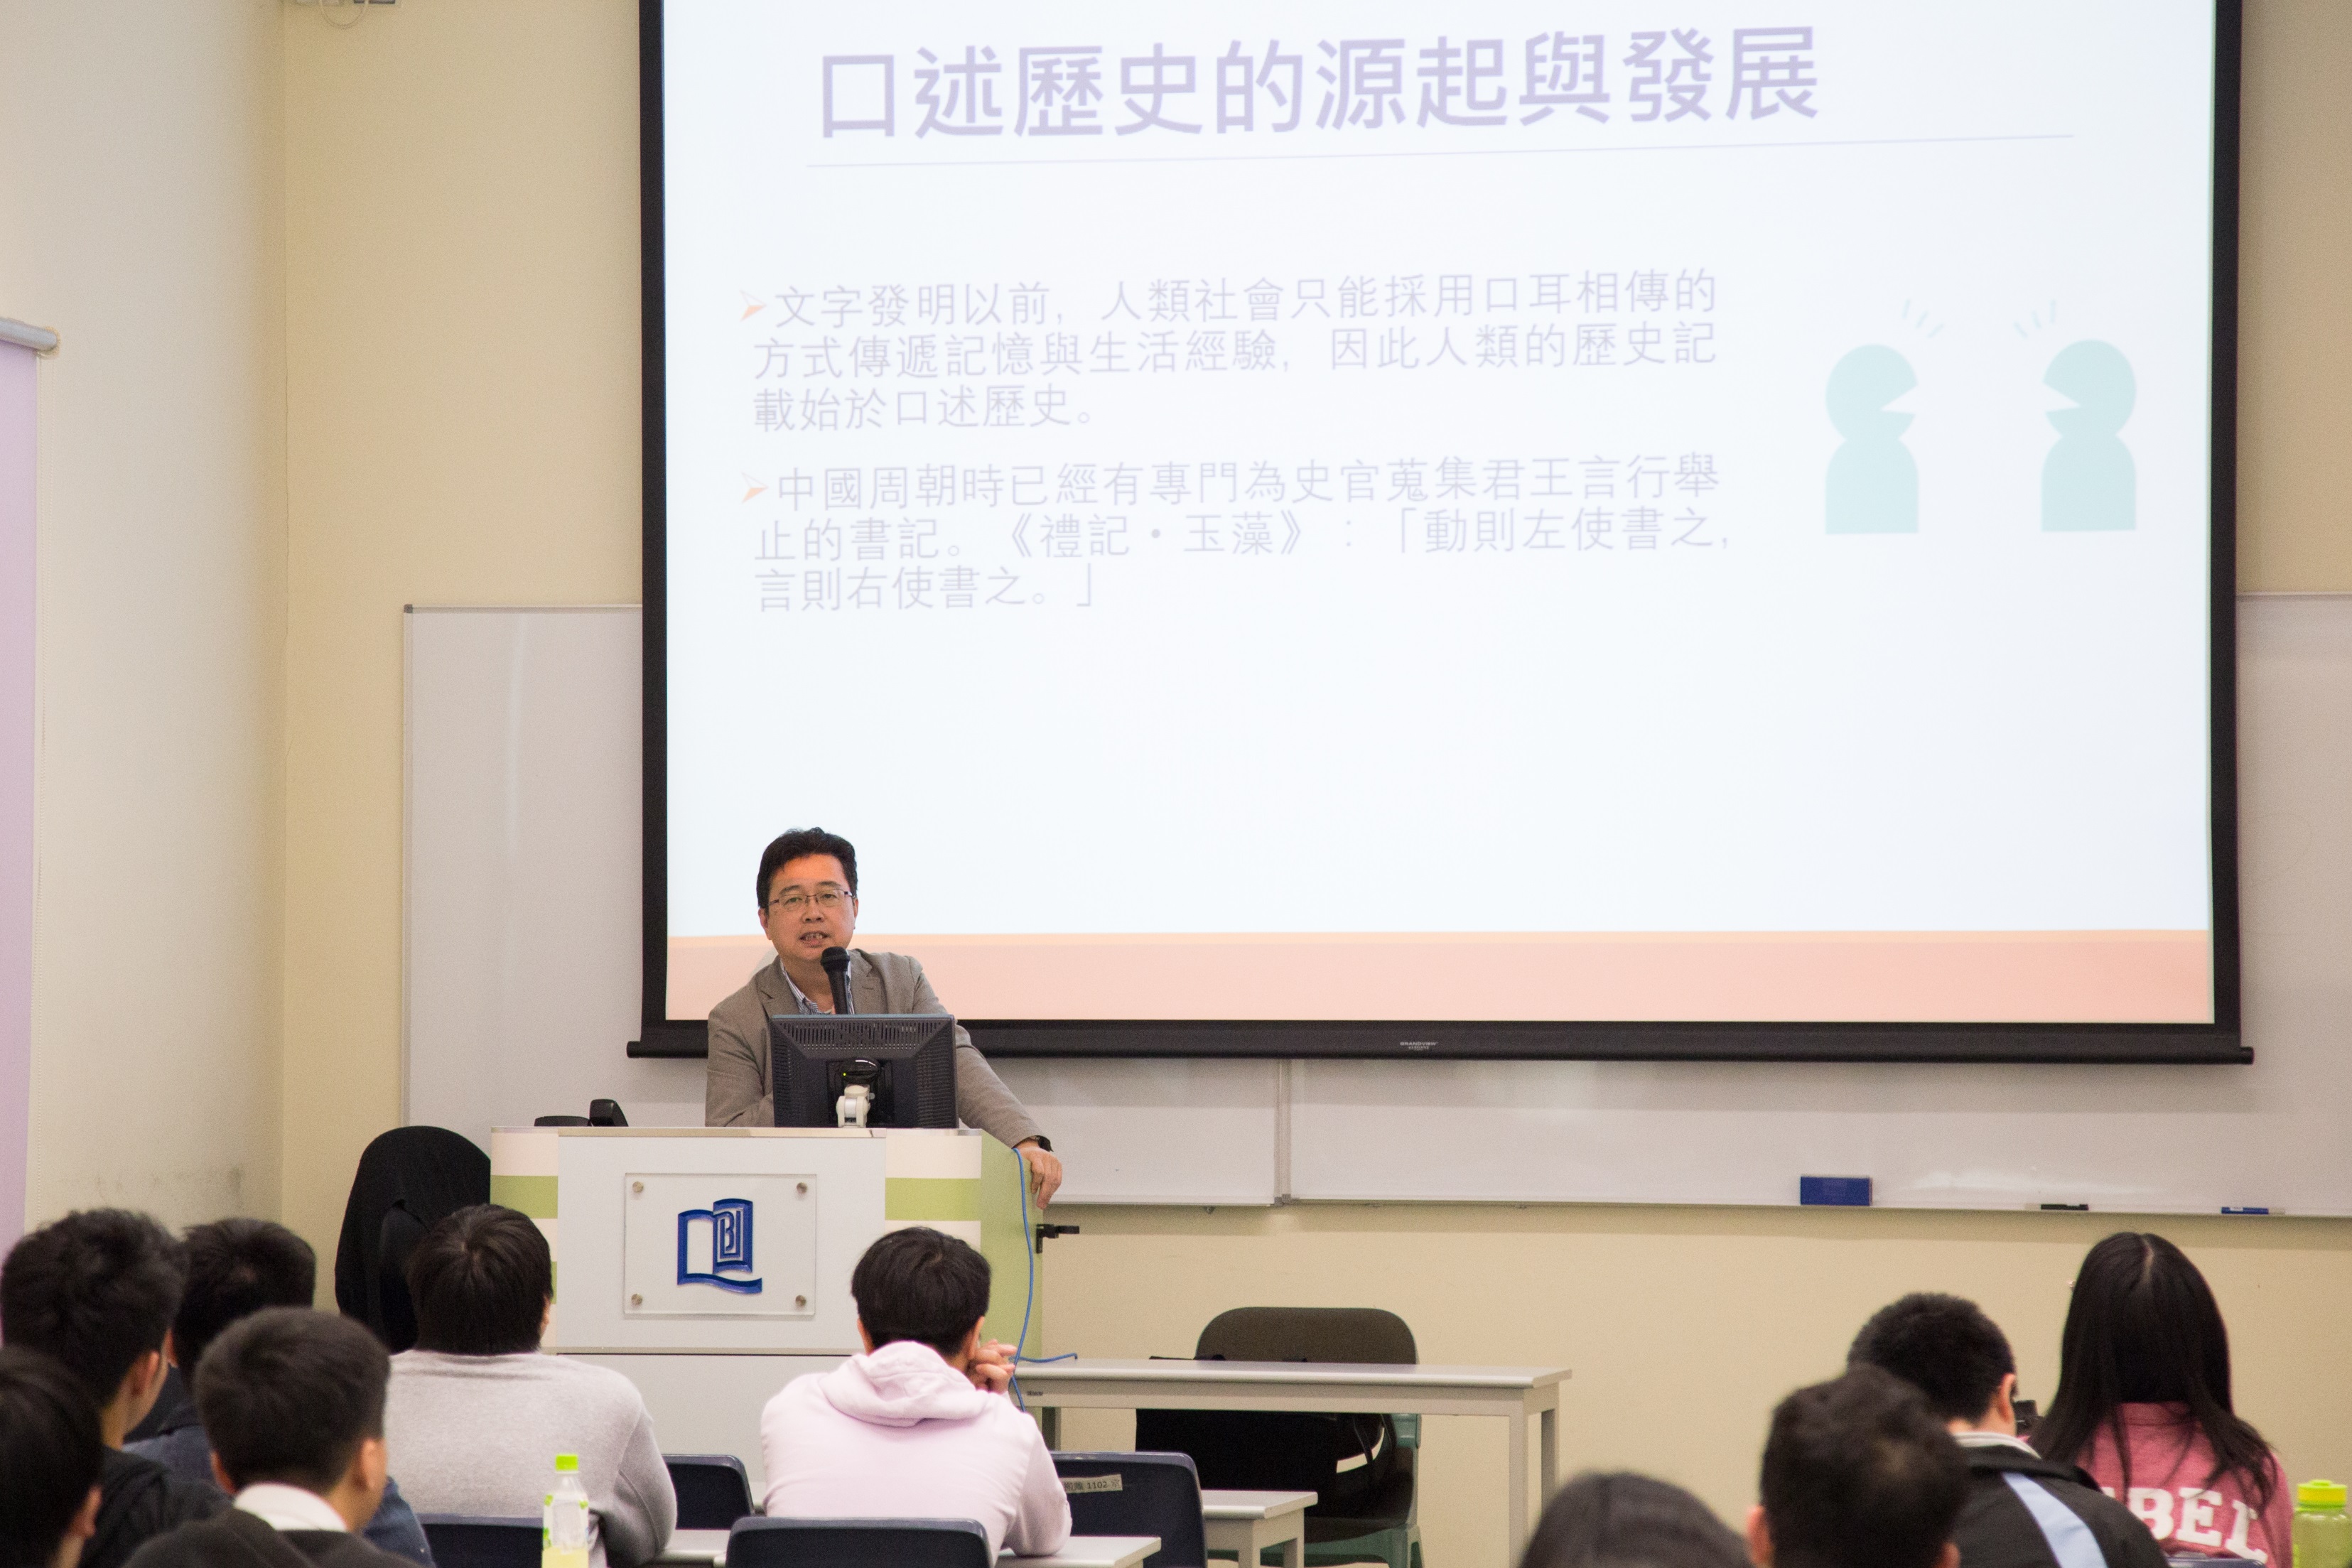 嶺南大學歷史系教授劉智鵬教授在「口述歷史與香港故事」講座上講解口述歷史的研究方法。